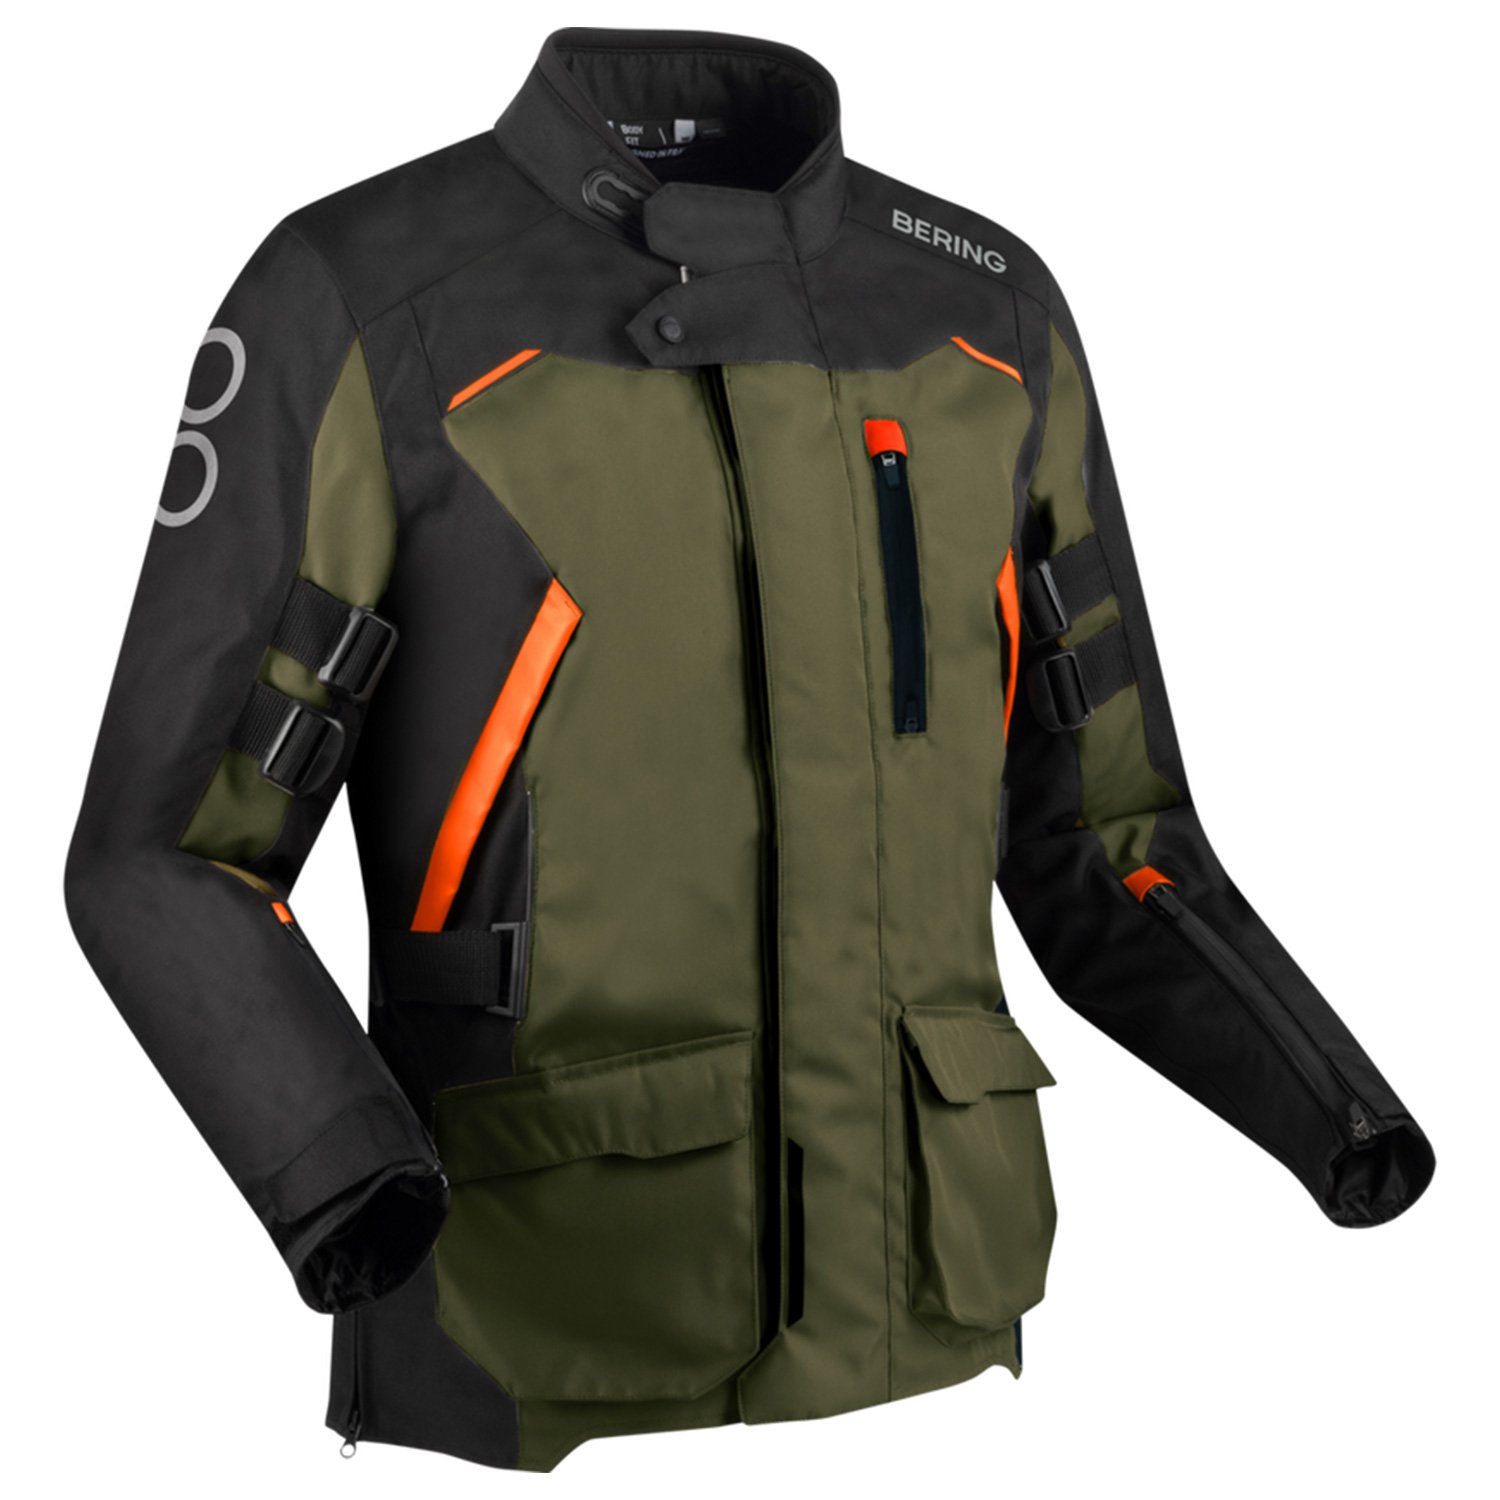 Image of Bering Zephyr Jacket Black Khaki Orange Size 4XL ID 3660815180990